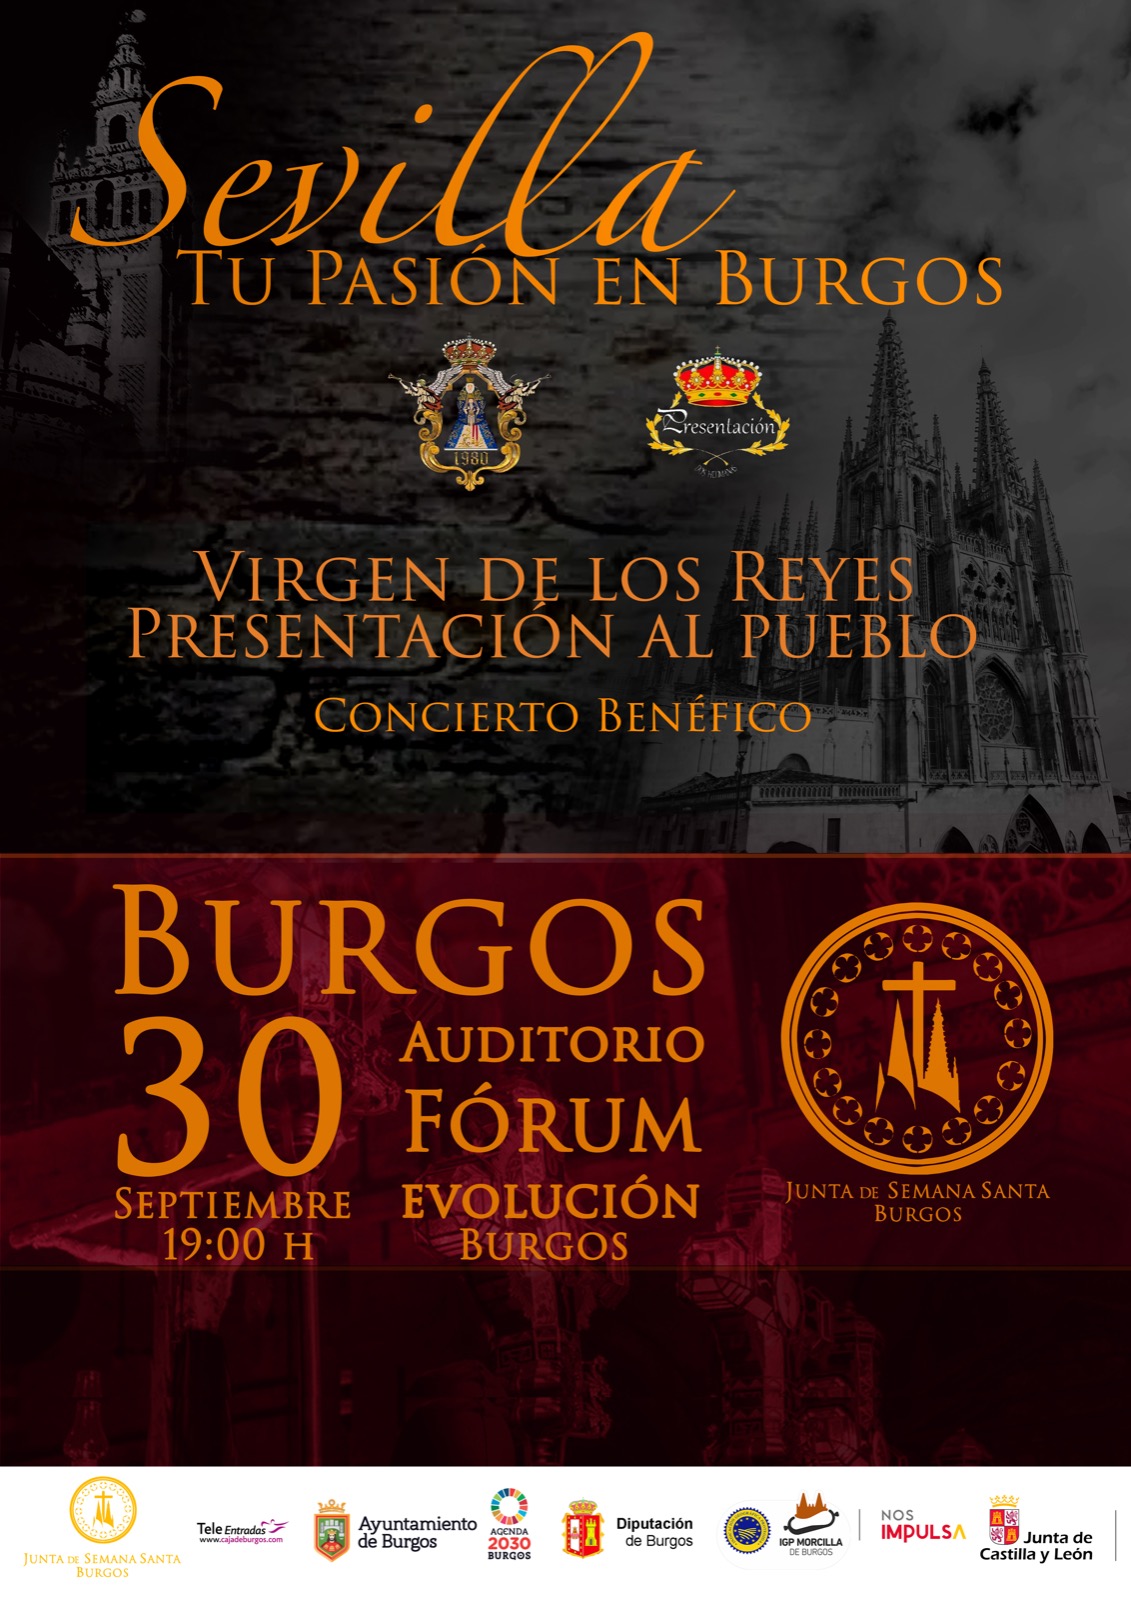 Burgos organiza un concierto benéfico con la presencia de Virgen de los Reyes y Presentación al Pueblo